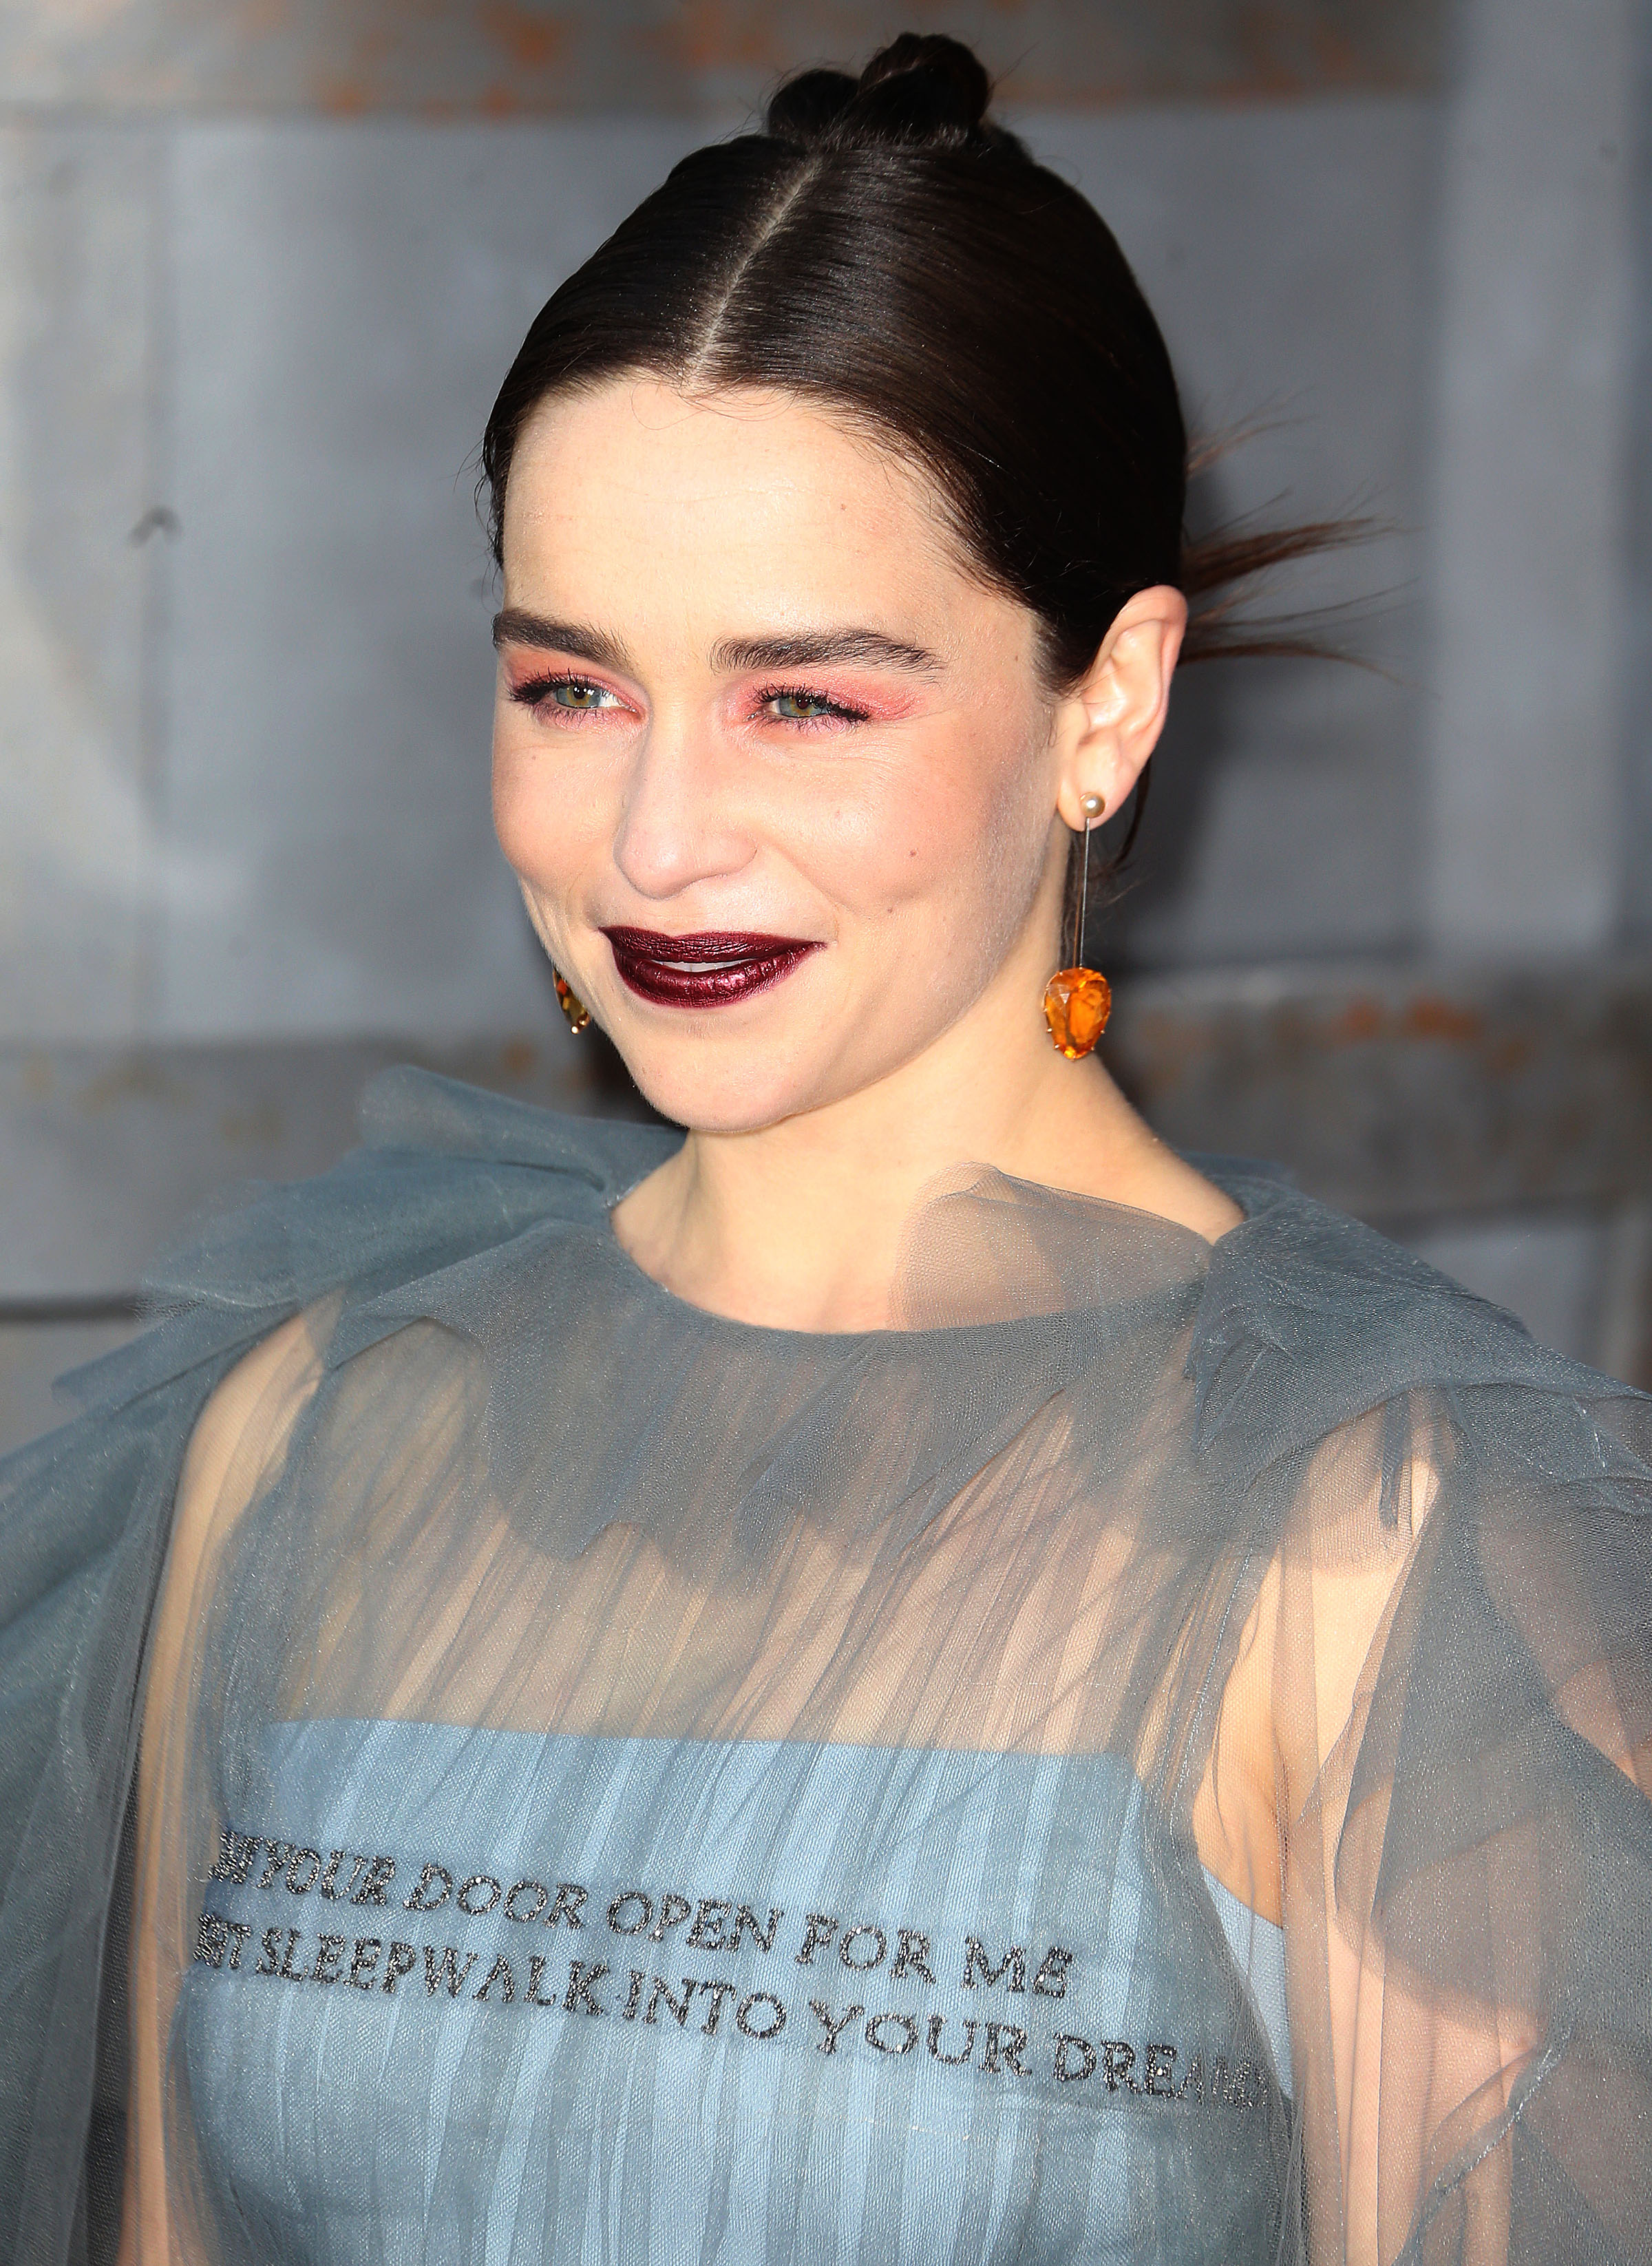 Το dragon inspired χτένισμα της Emilia Clarke στην πρεμιέρα του Game of Thrones!